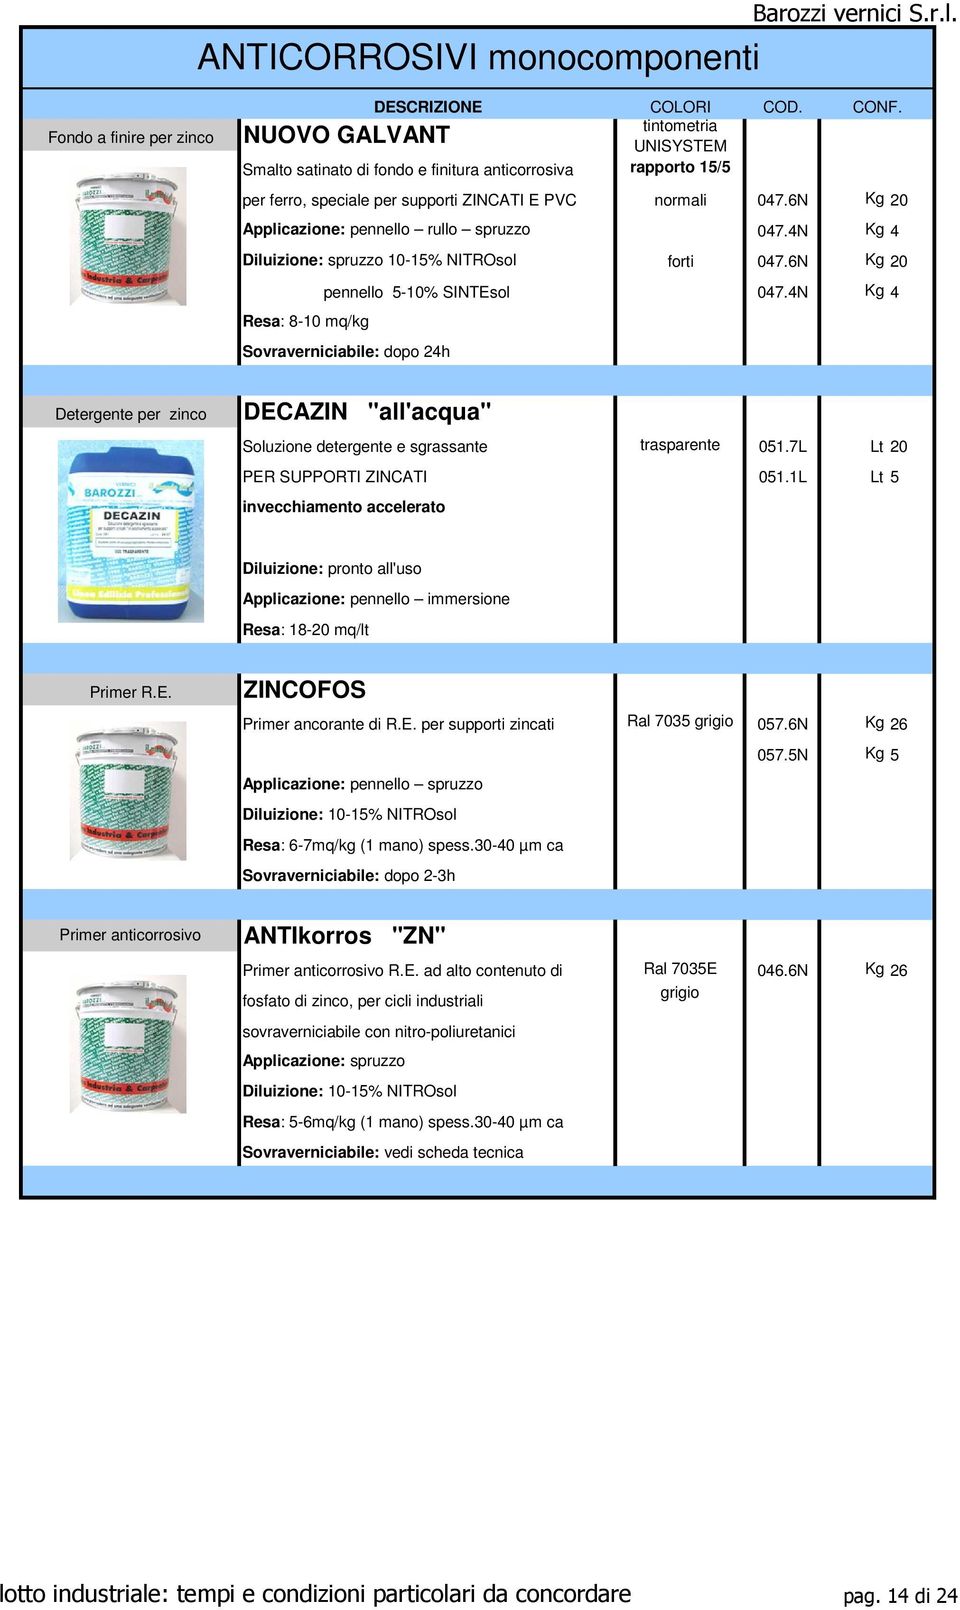 4N Kg 4 Resa: 8-10 mq/kg Sovraverniciabile: dopo 24h Detergente per zinco DECAZIN "all'acqua" Soluzione detergente e sgrassante trasparente 051.7L Lt 20 PER SUPPORTI ZINCATI 051.